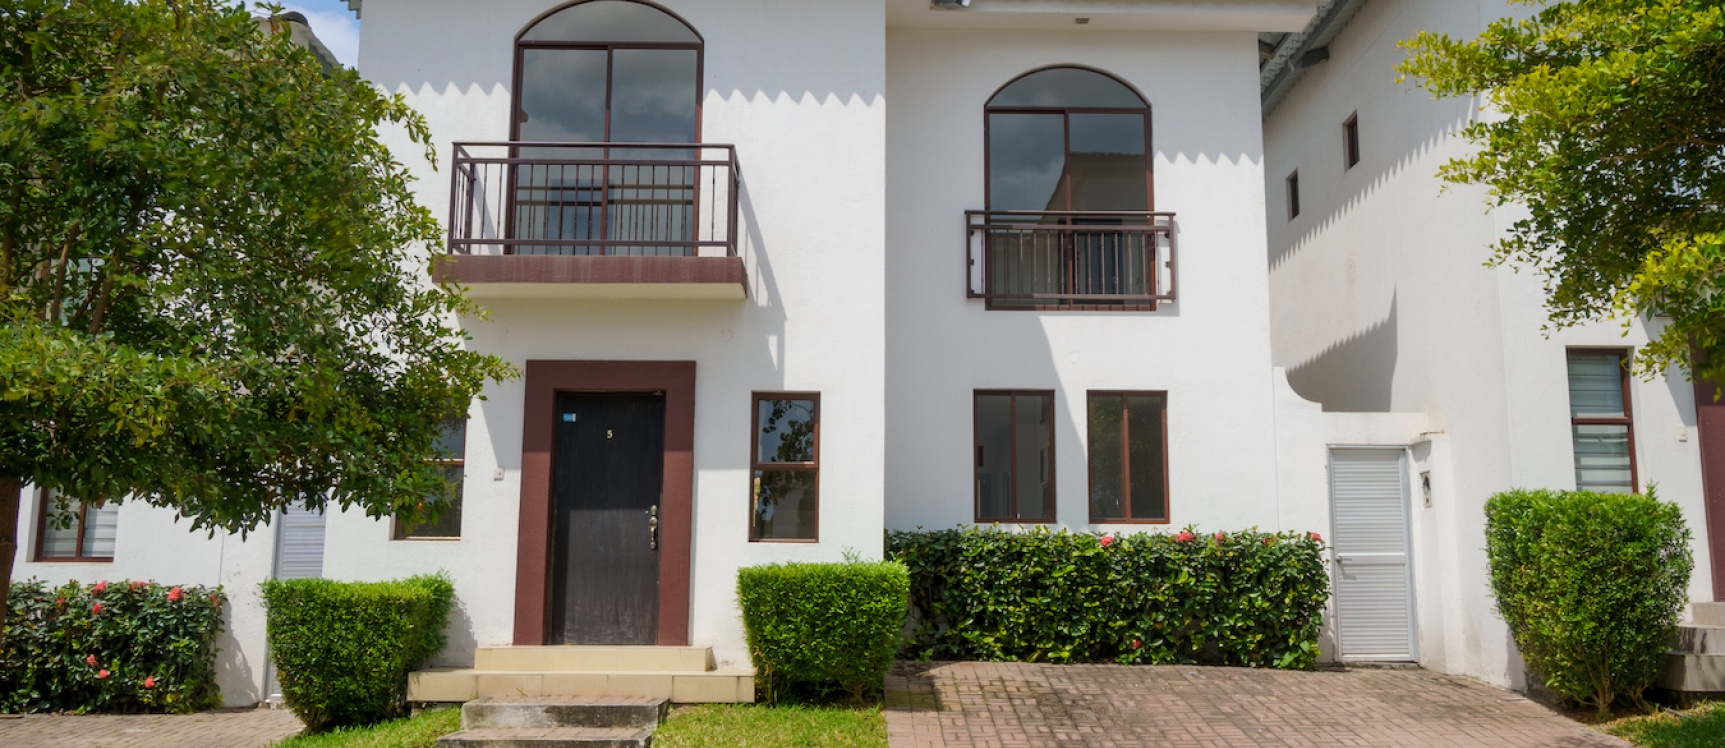 GeoBienes - Casa de 4 habitaciones en venta ubicada en la Urbanización Villas del Bosque - Plusvalia Guayaquil Casas de venta y alquiler Inmobiliaria Ecuador